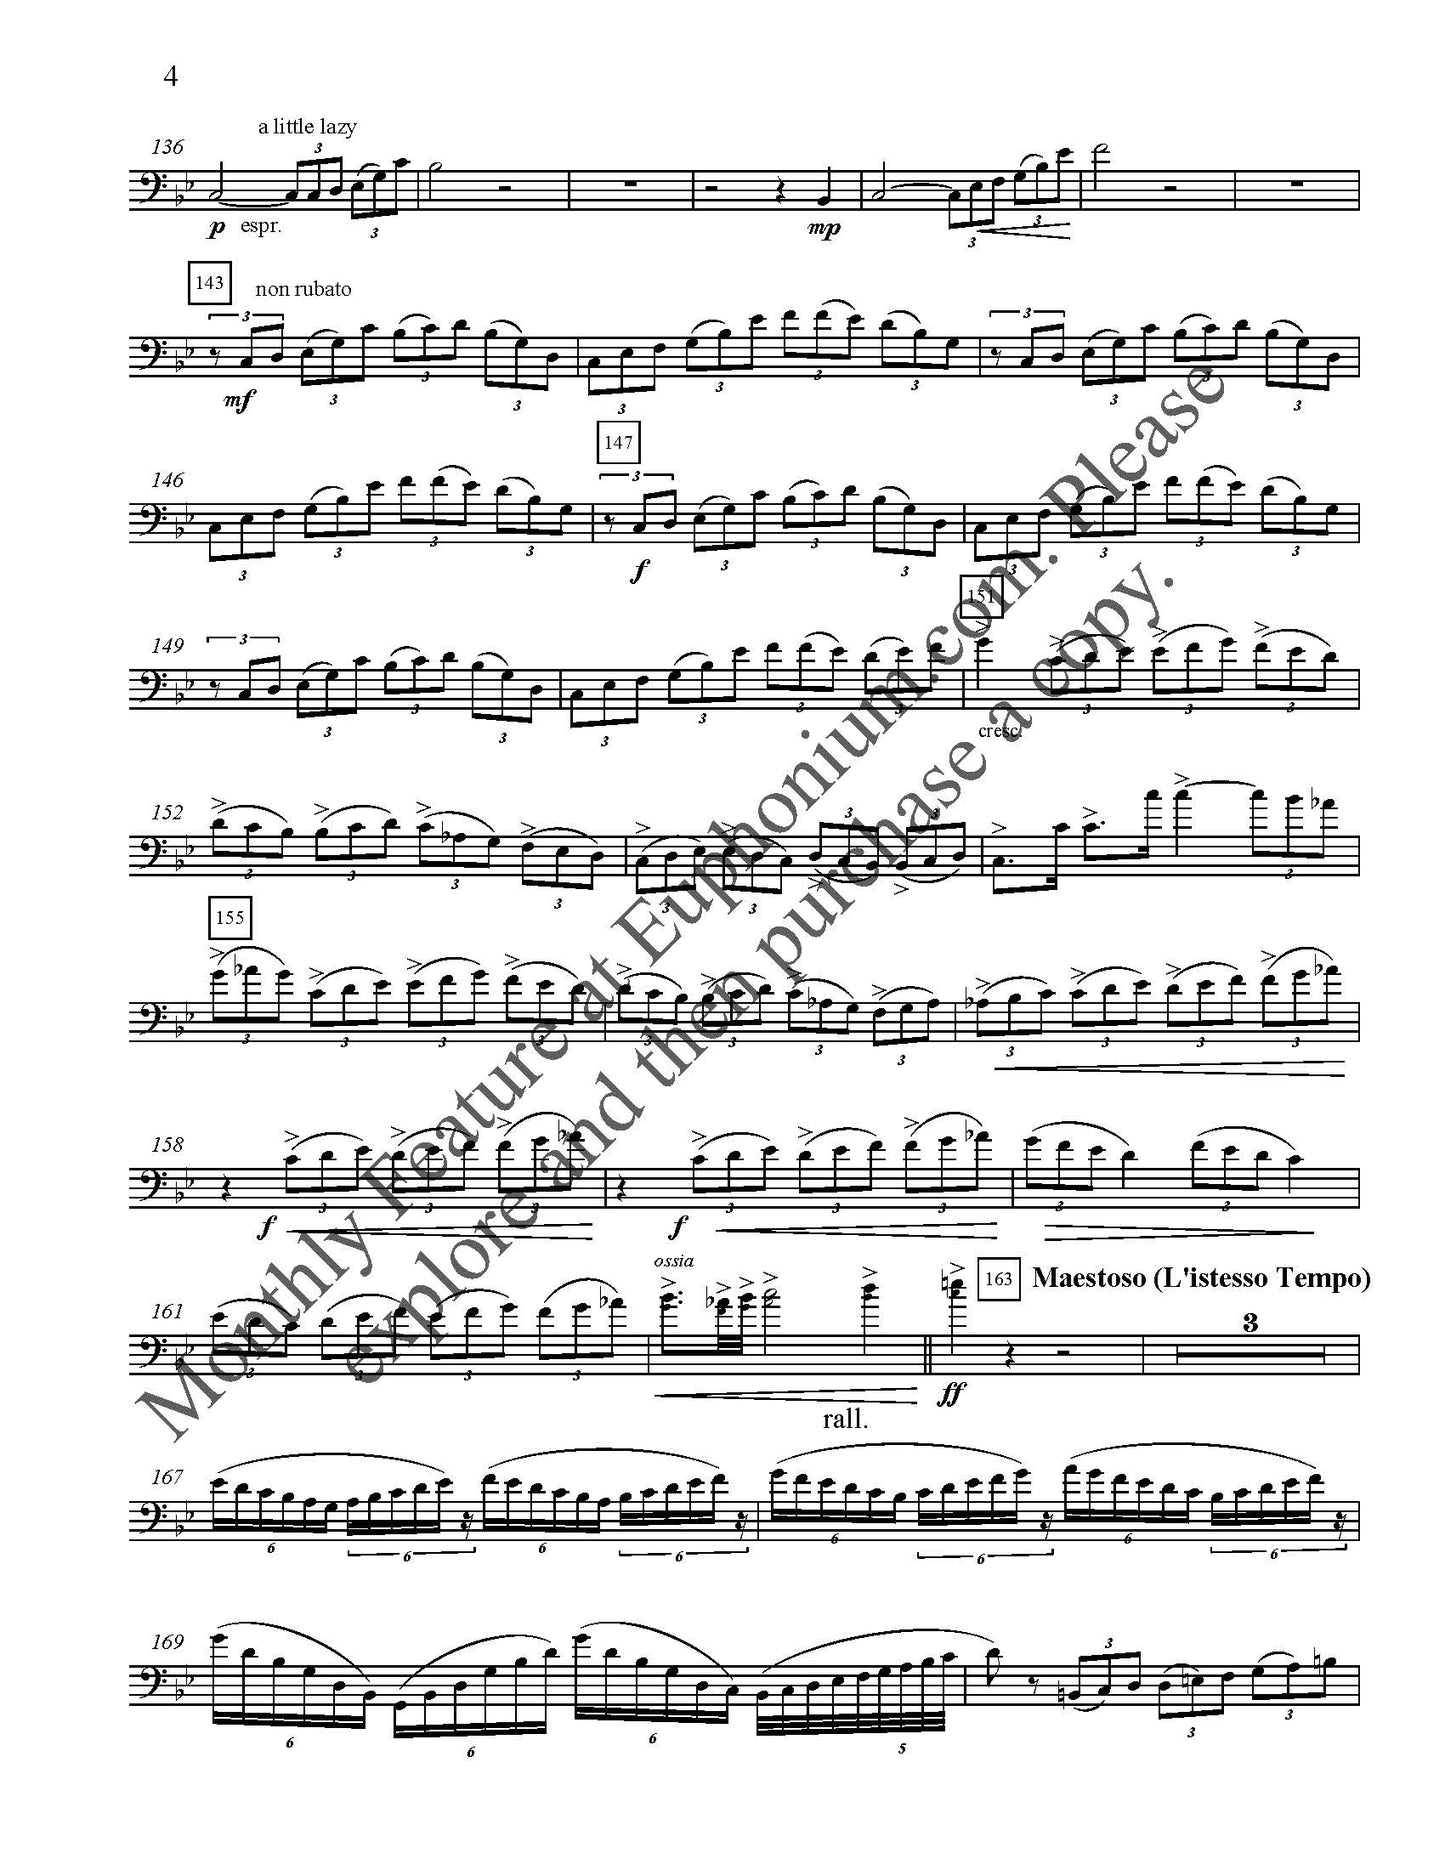 Feinstein, Allen - Concerto for Euphonium DOWNLOAD